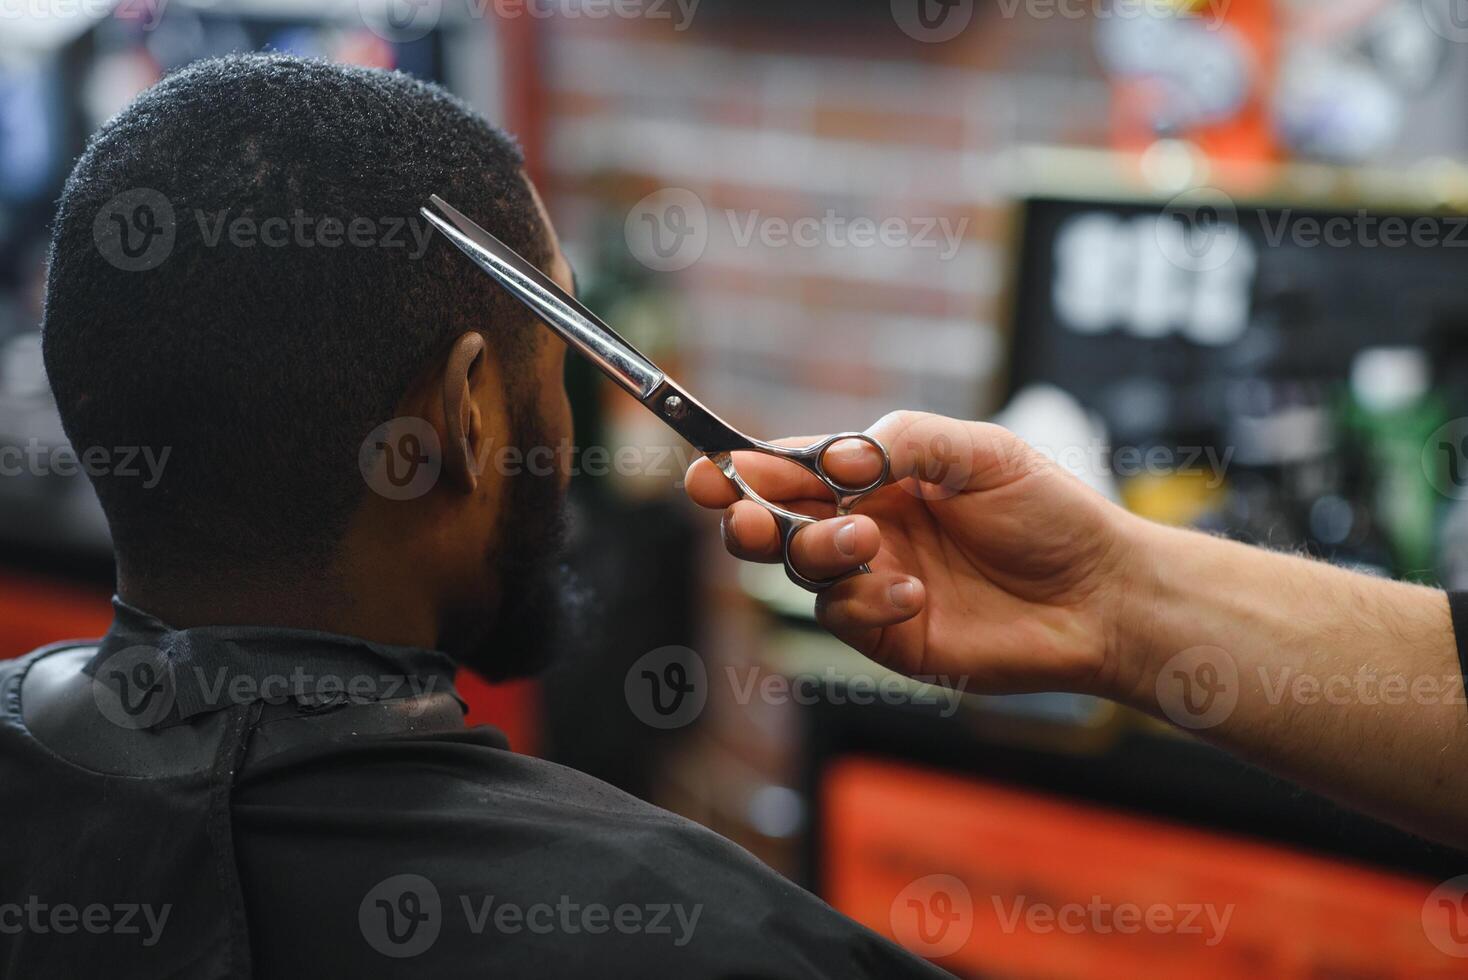 visite salon de coiffure. africain américain homme dans une élégant coiffeur magasin photo